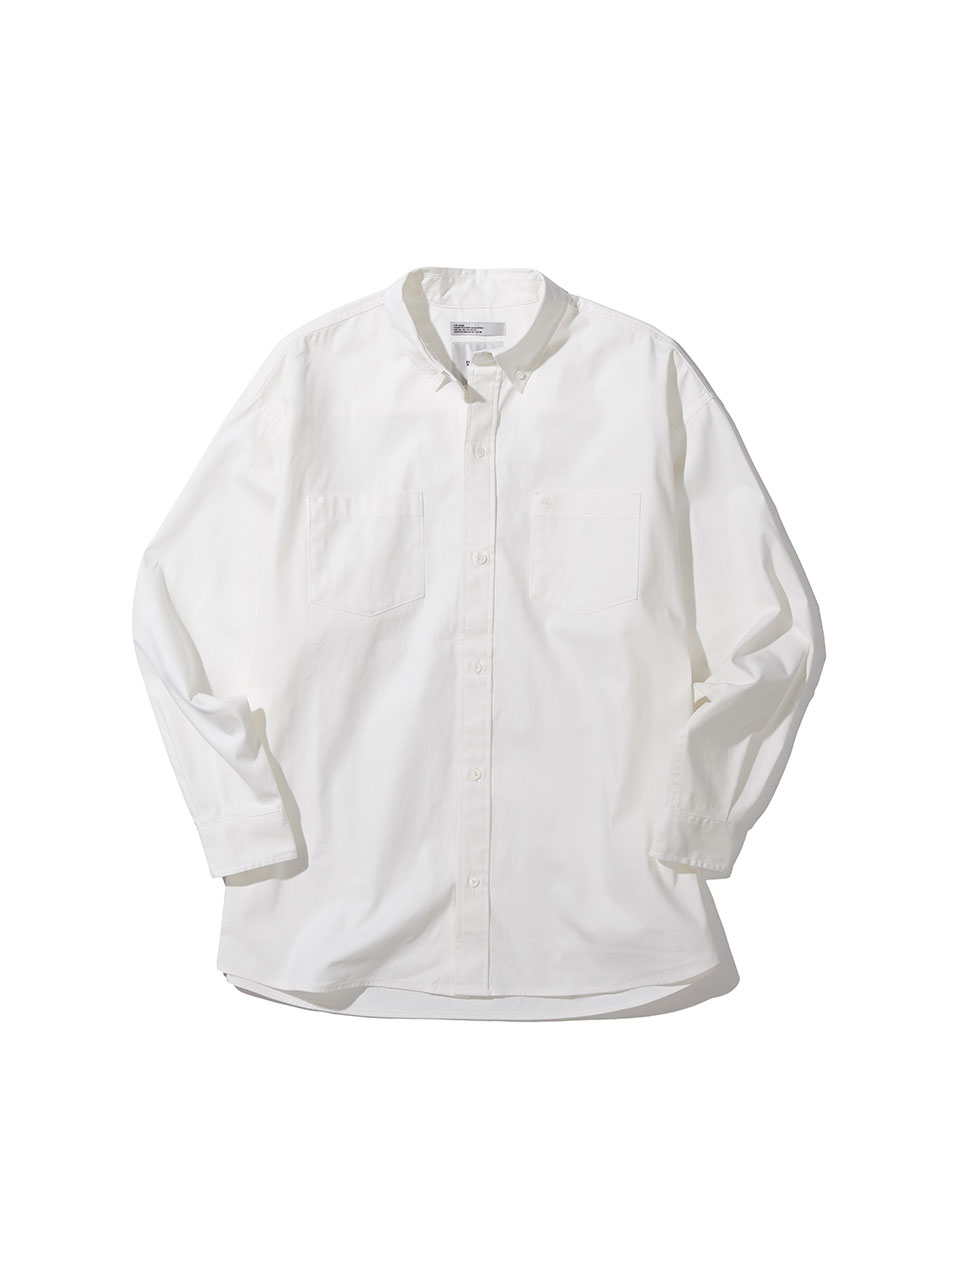 SOUNDSLIFE - Back Loop Two Pocket Oxford Shirt White